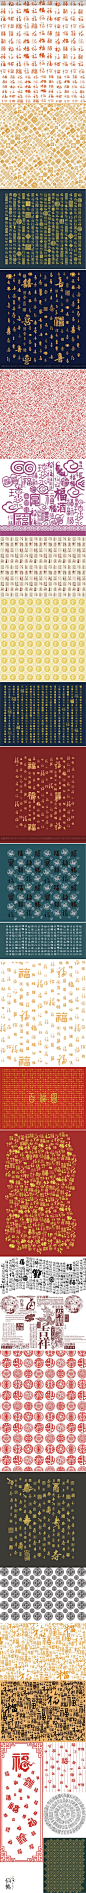 新年中国风万字福字背景祝福模板中国红喜庆贺卡海报psd素材